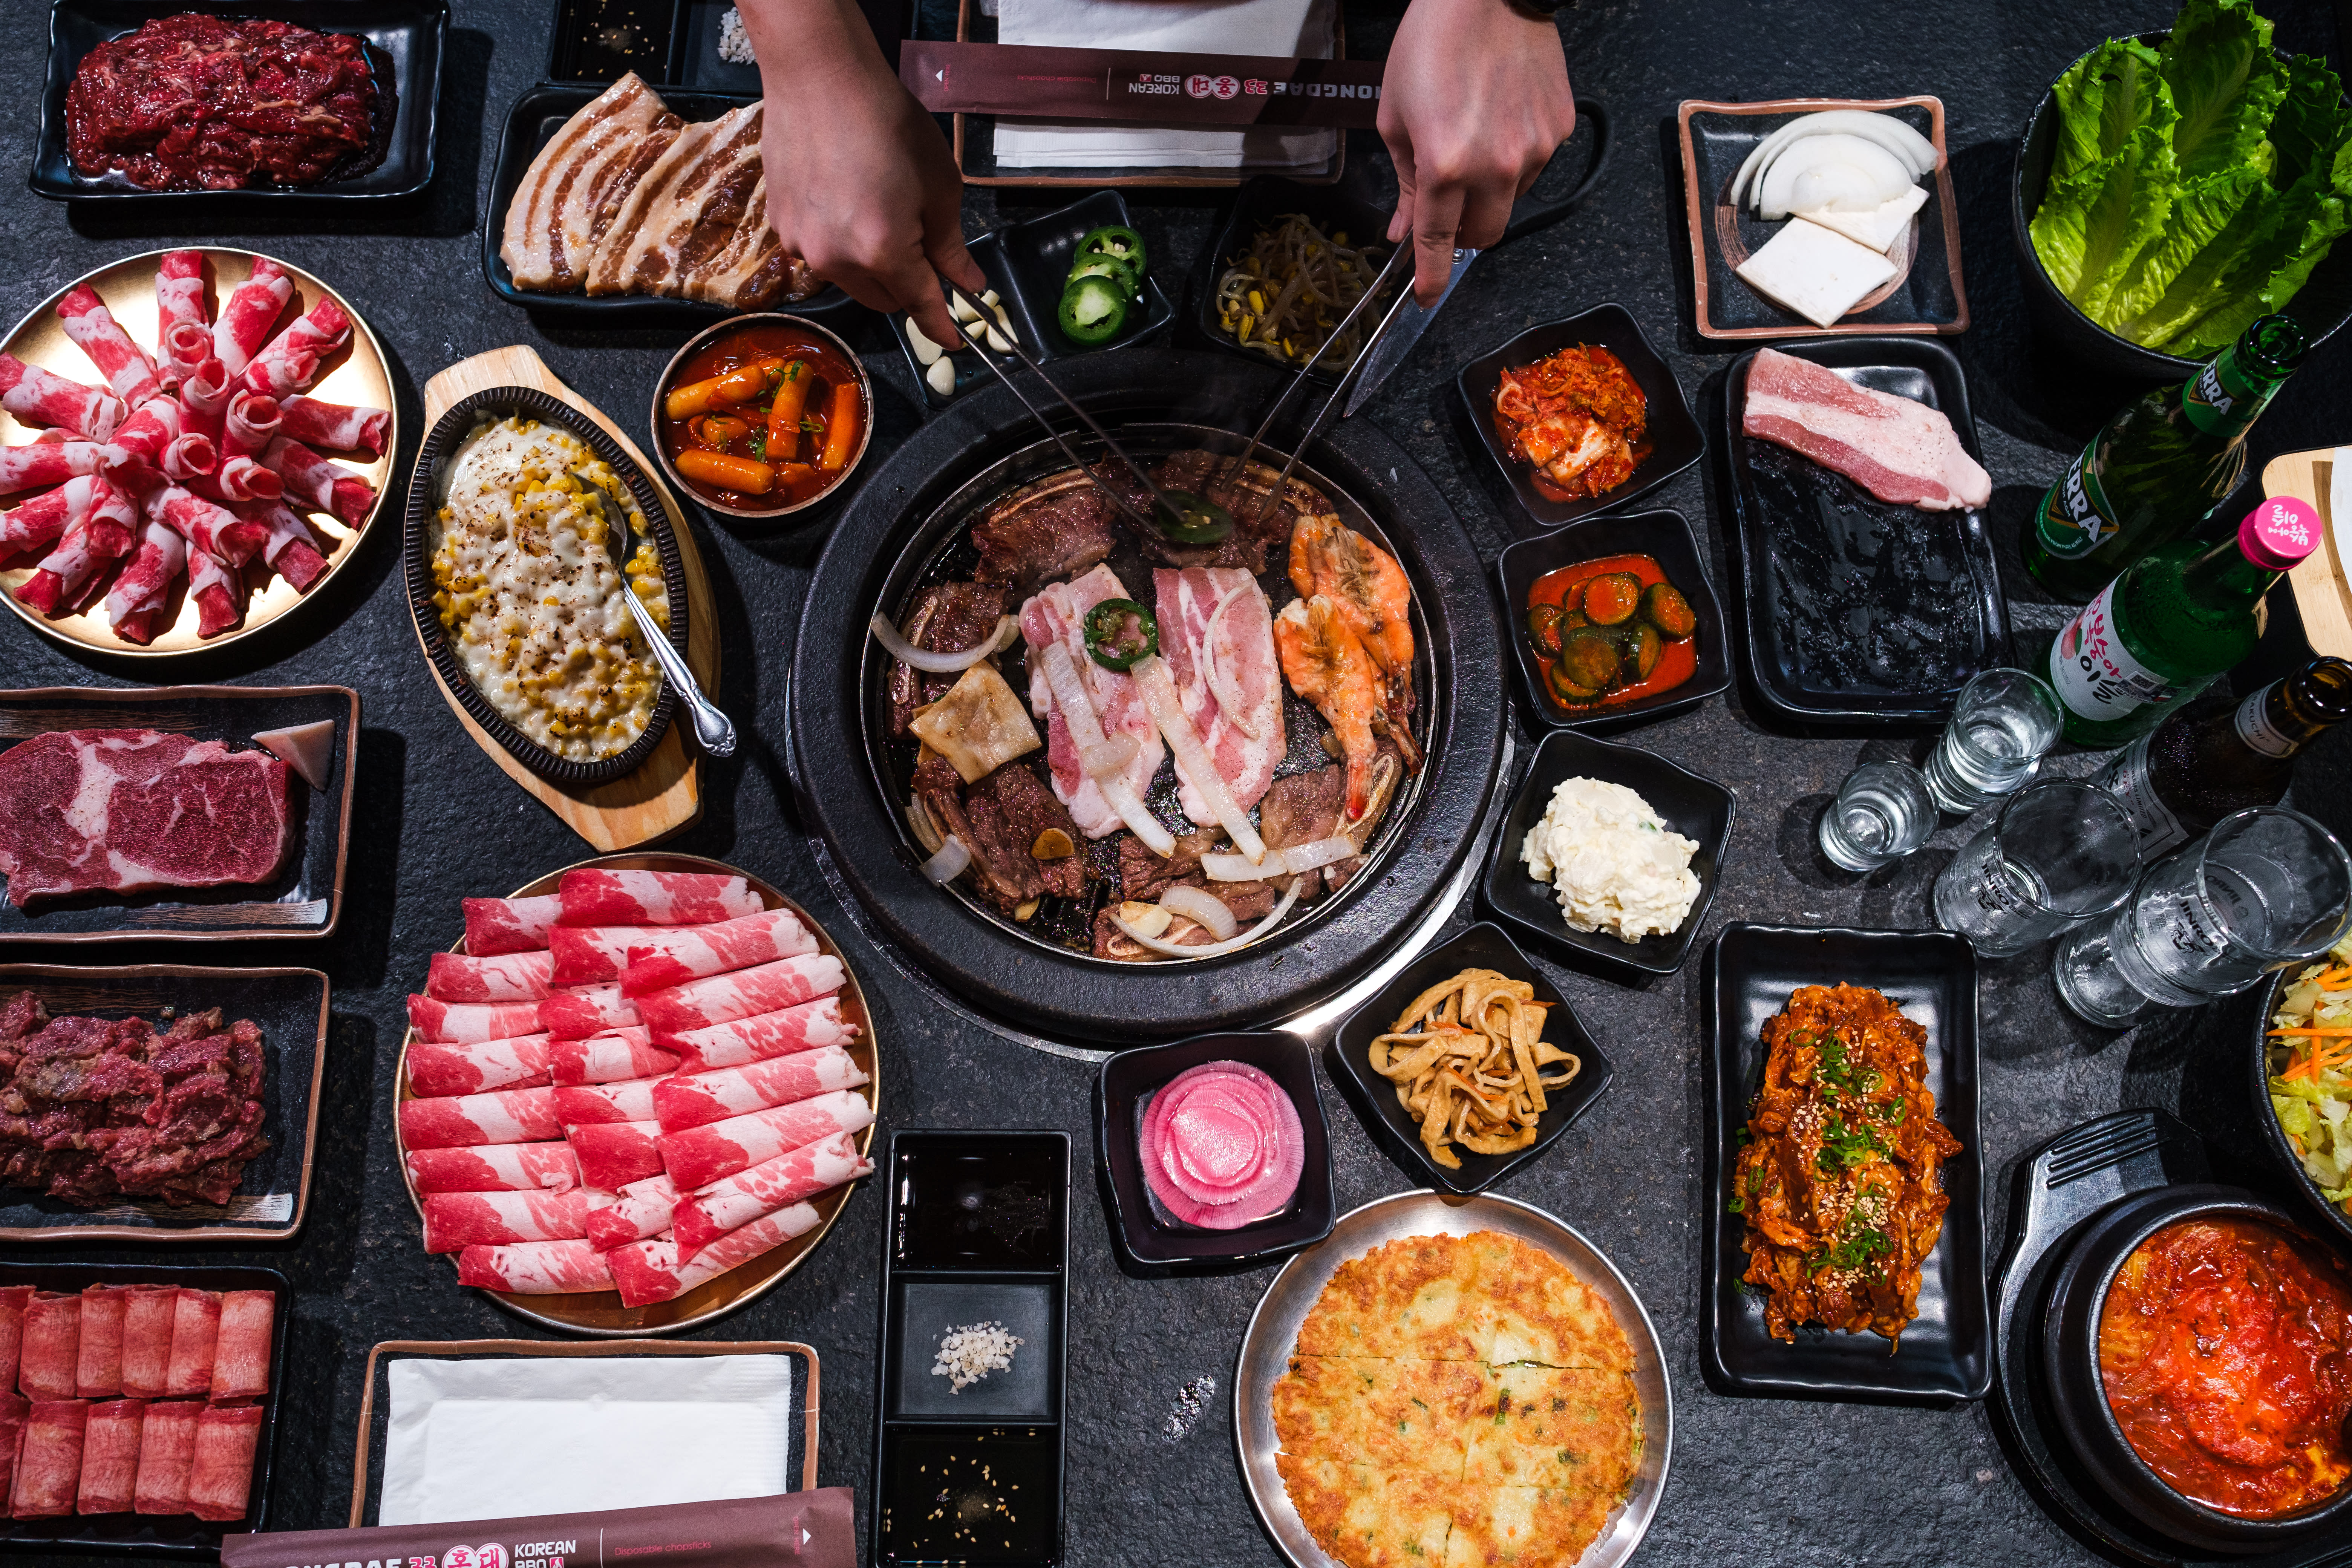 Top 10 Korean BBQ Restaurants in Houston